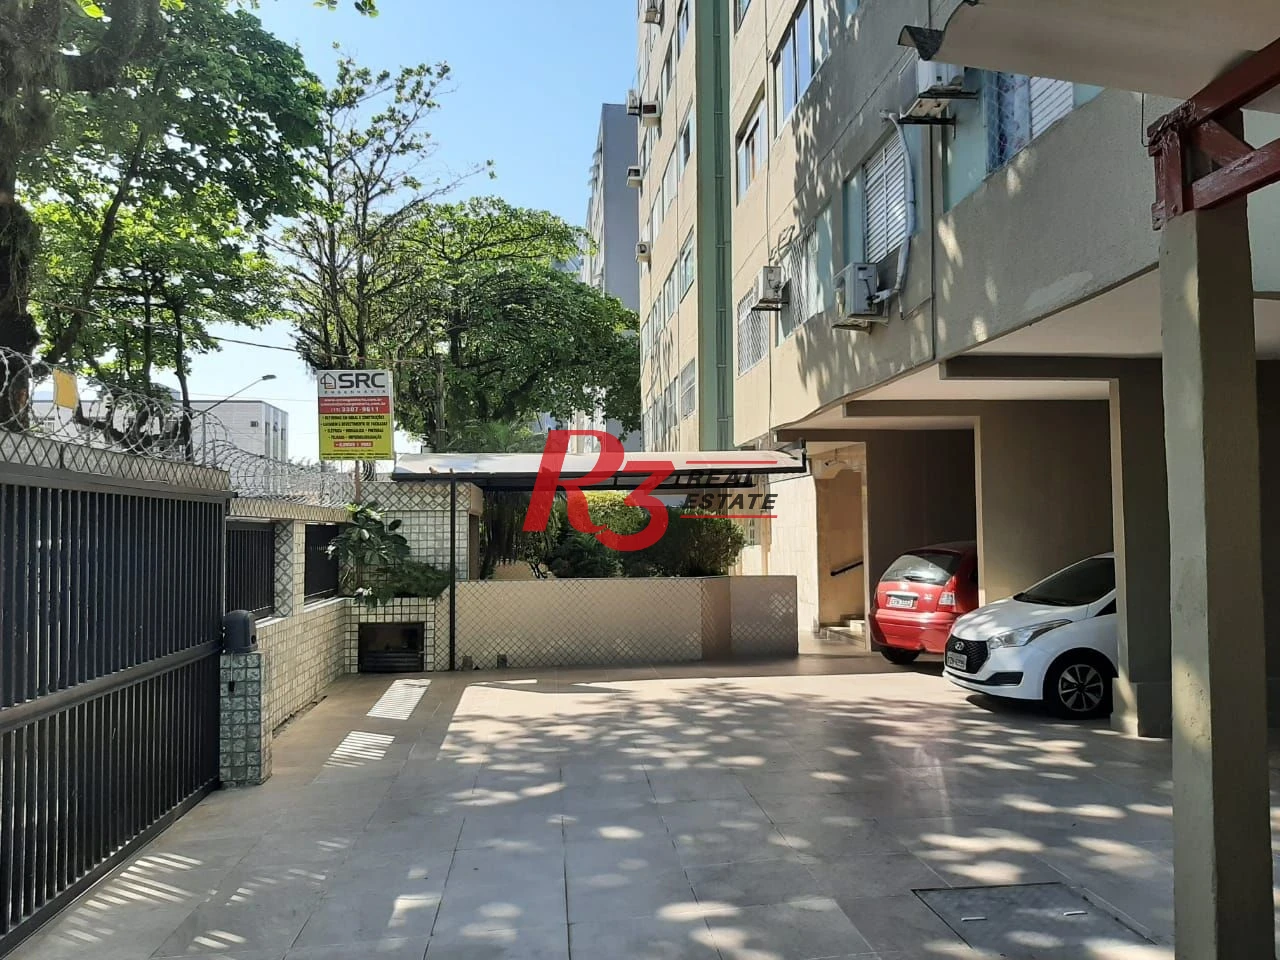 Apartamento à venda, 60 m² por R$ 420.000,00 - Encruzilhada - Santos/SP